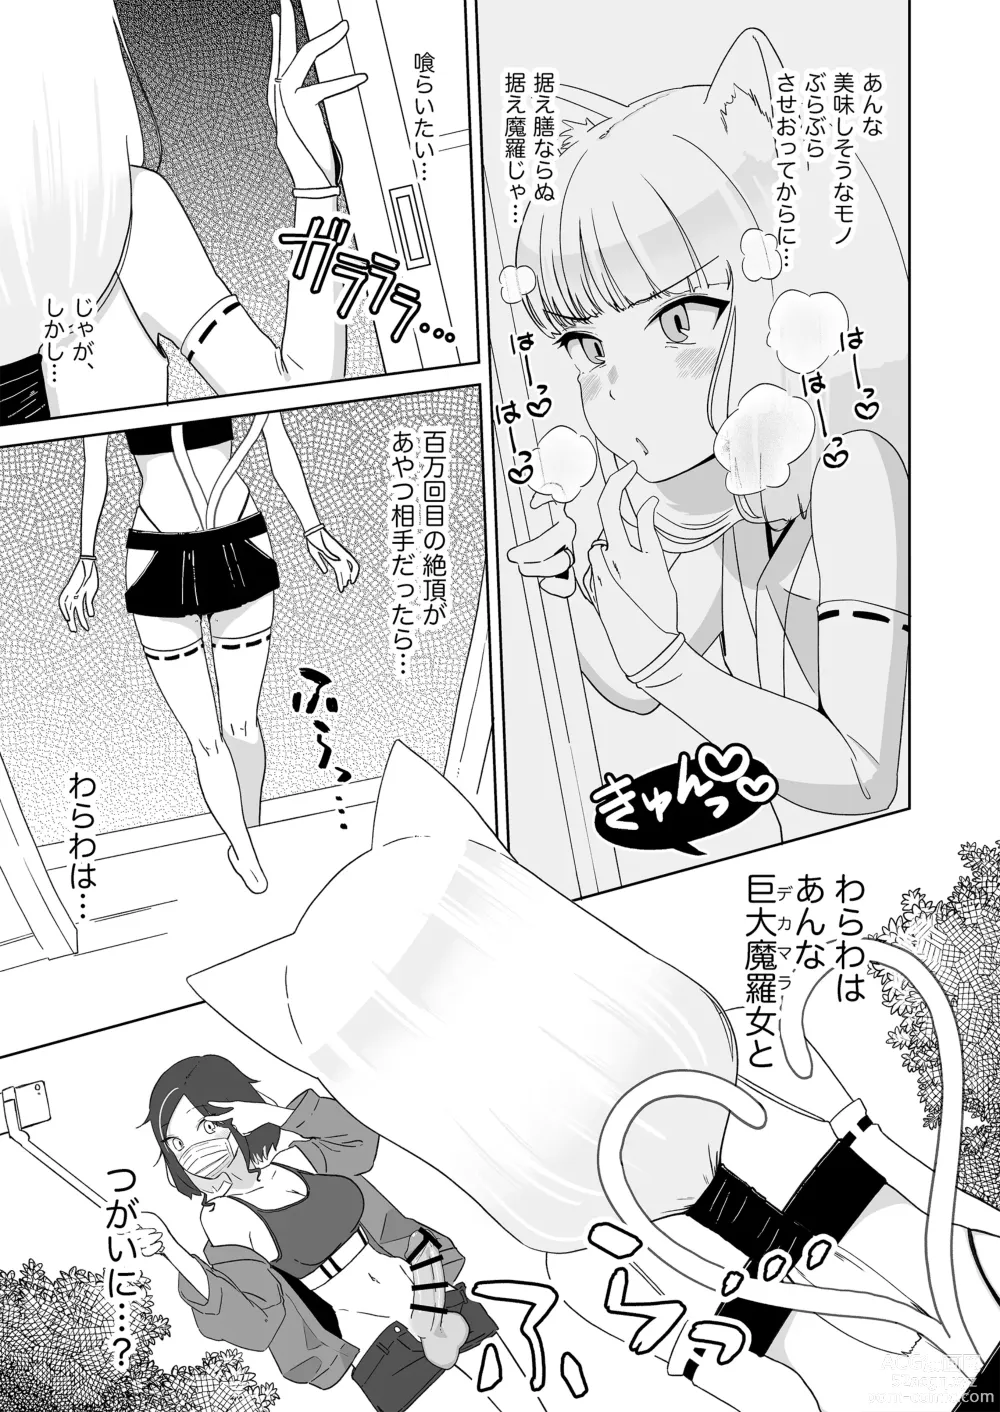 Page 6 of doujinshi Hyakuman Kaime no Acme de Kekkon shita Neko